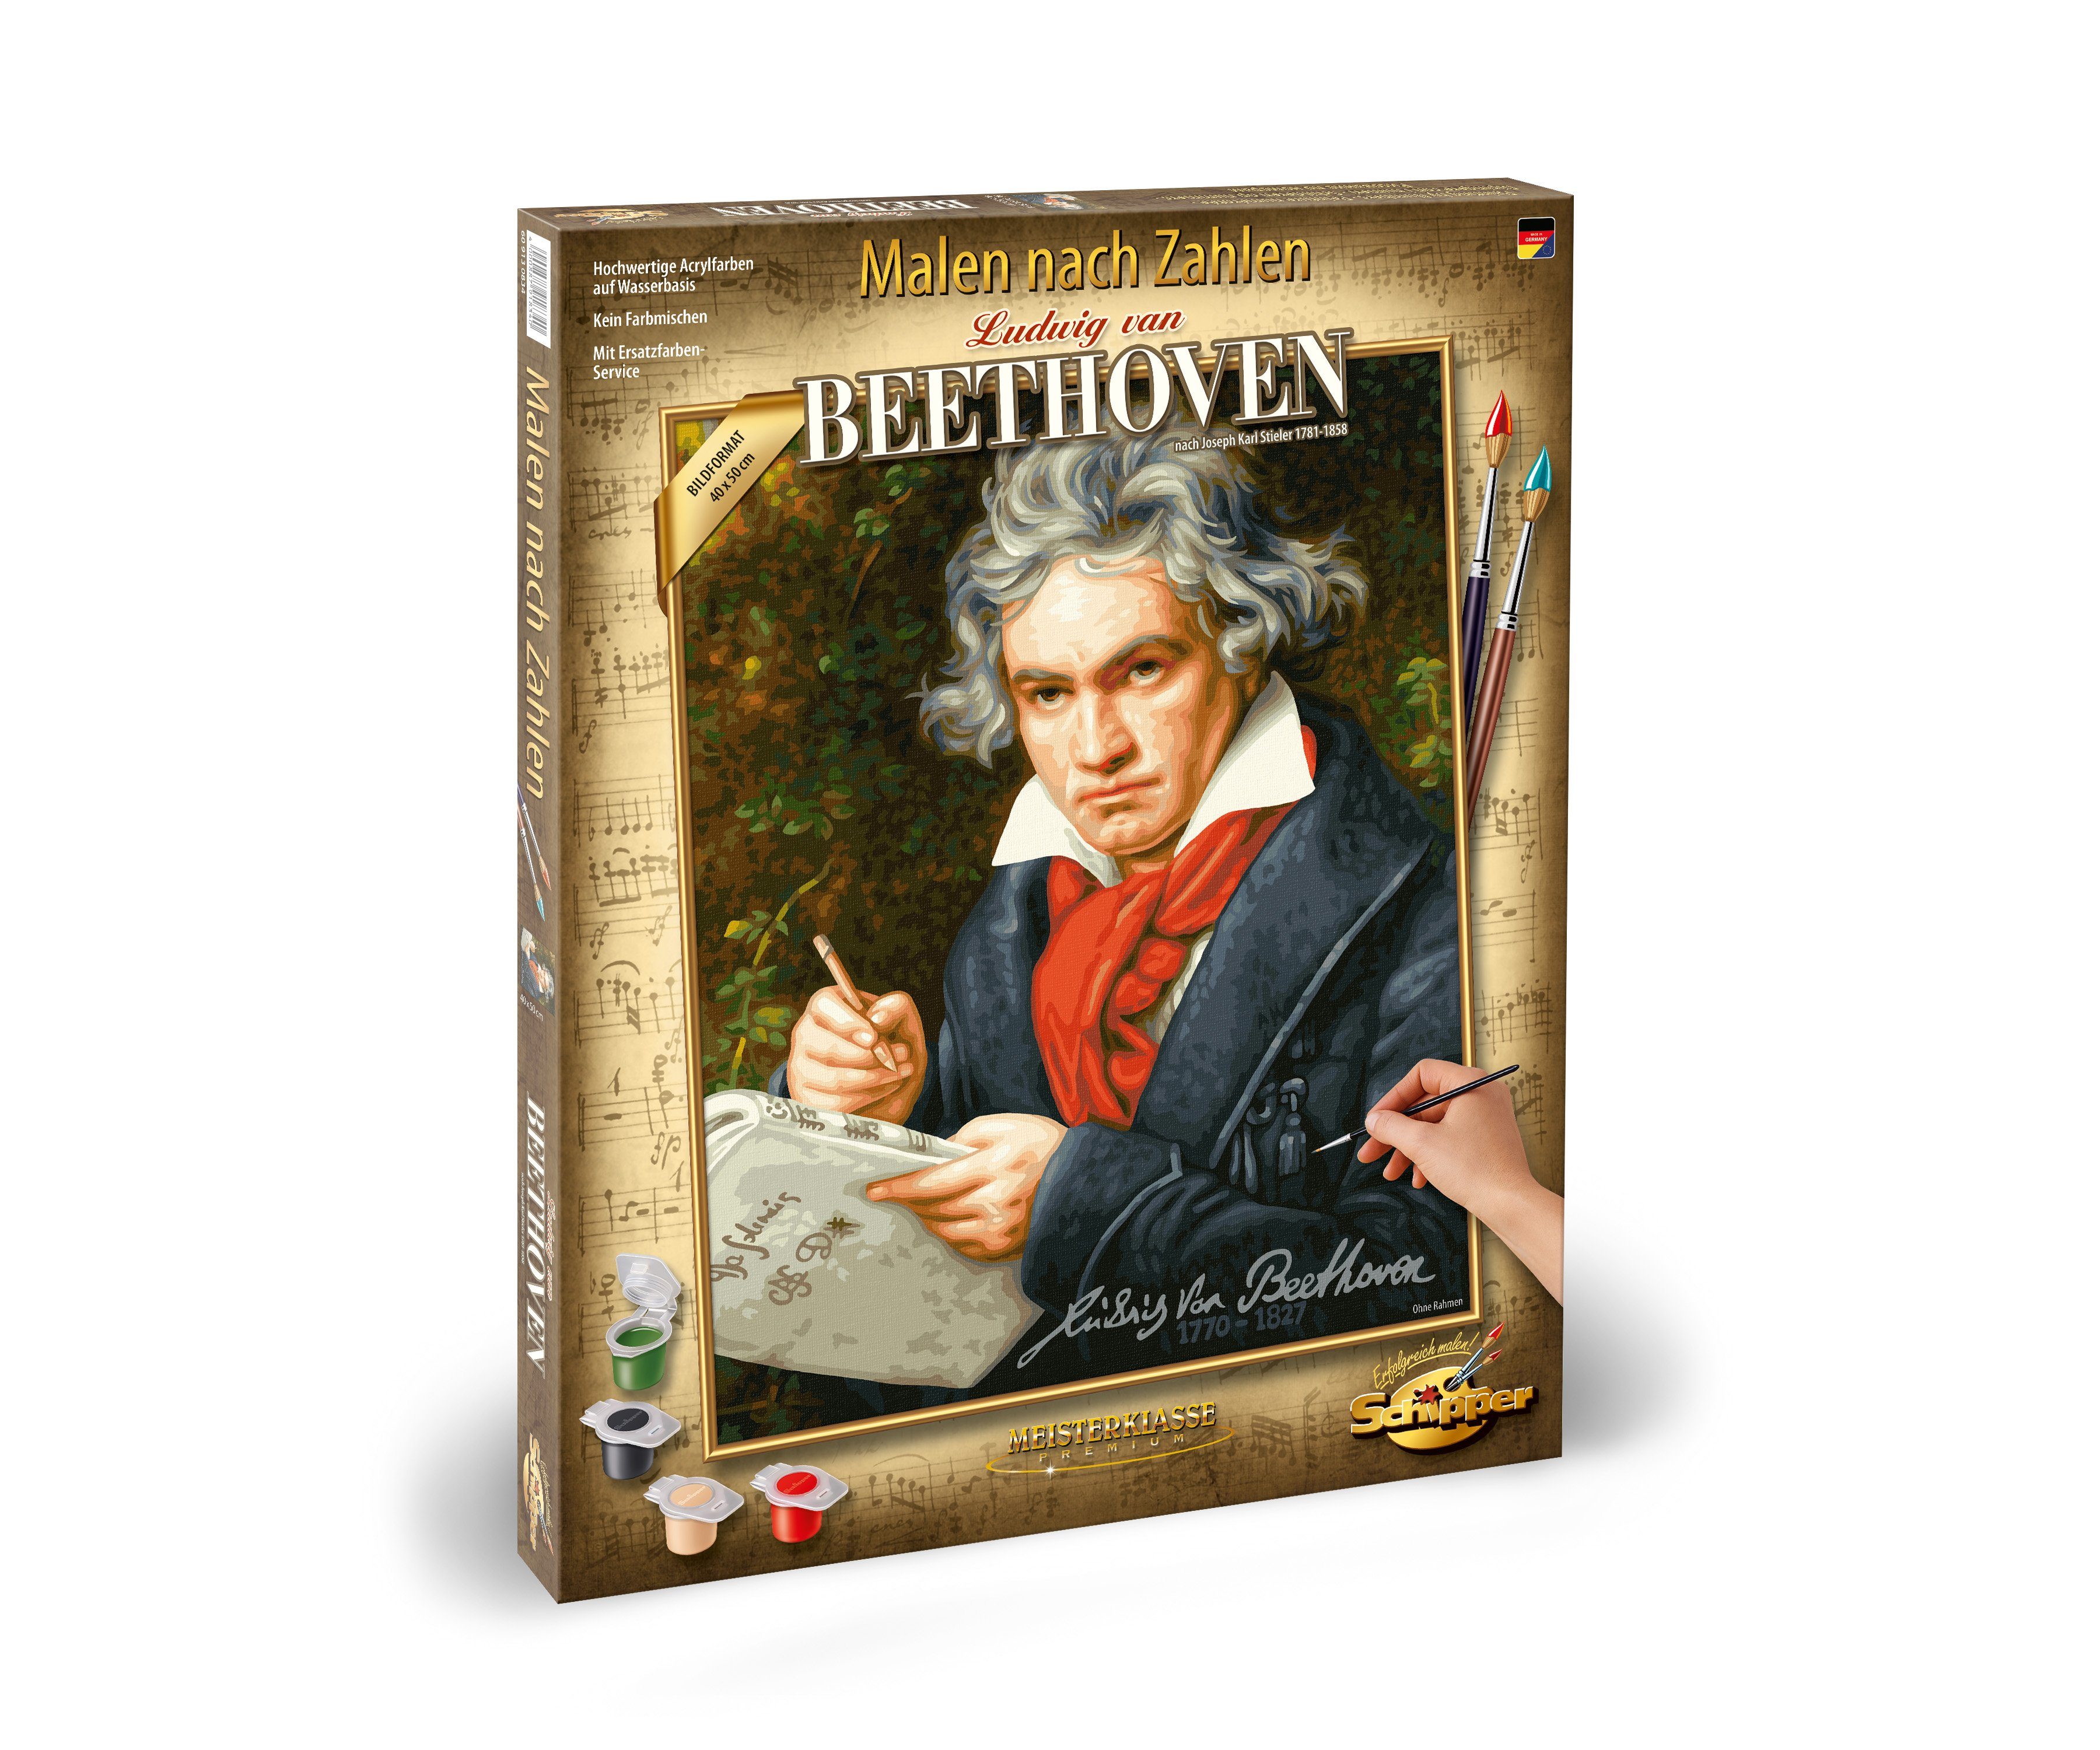 1770-1827 Beethoven van Germany Ludwig Malen Zahlen in Made Zahlen Schipper nach Malen (Set), nach